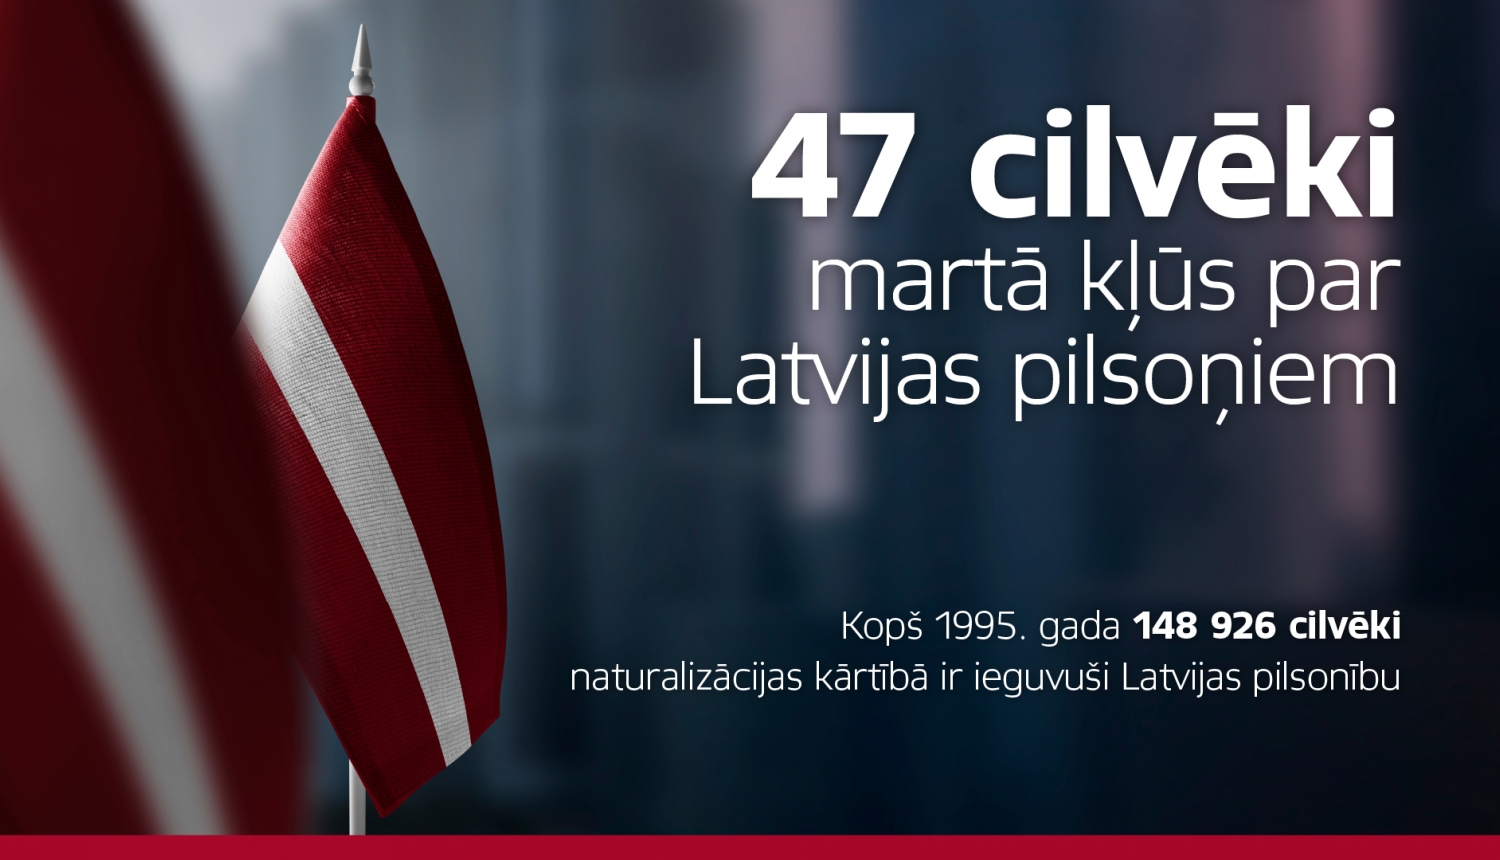 47 cilvēki martā kļūst par Latvijas pilsoņiem